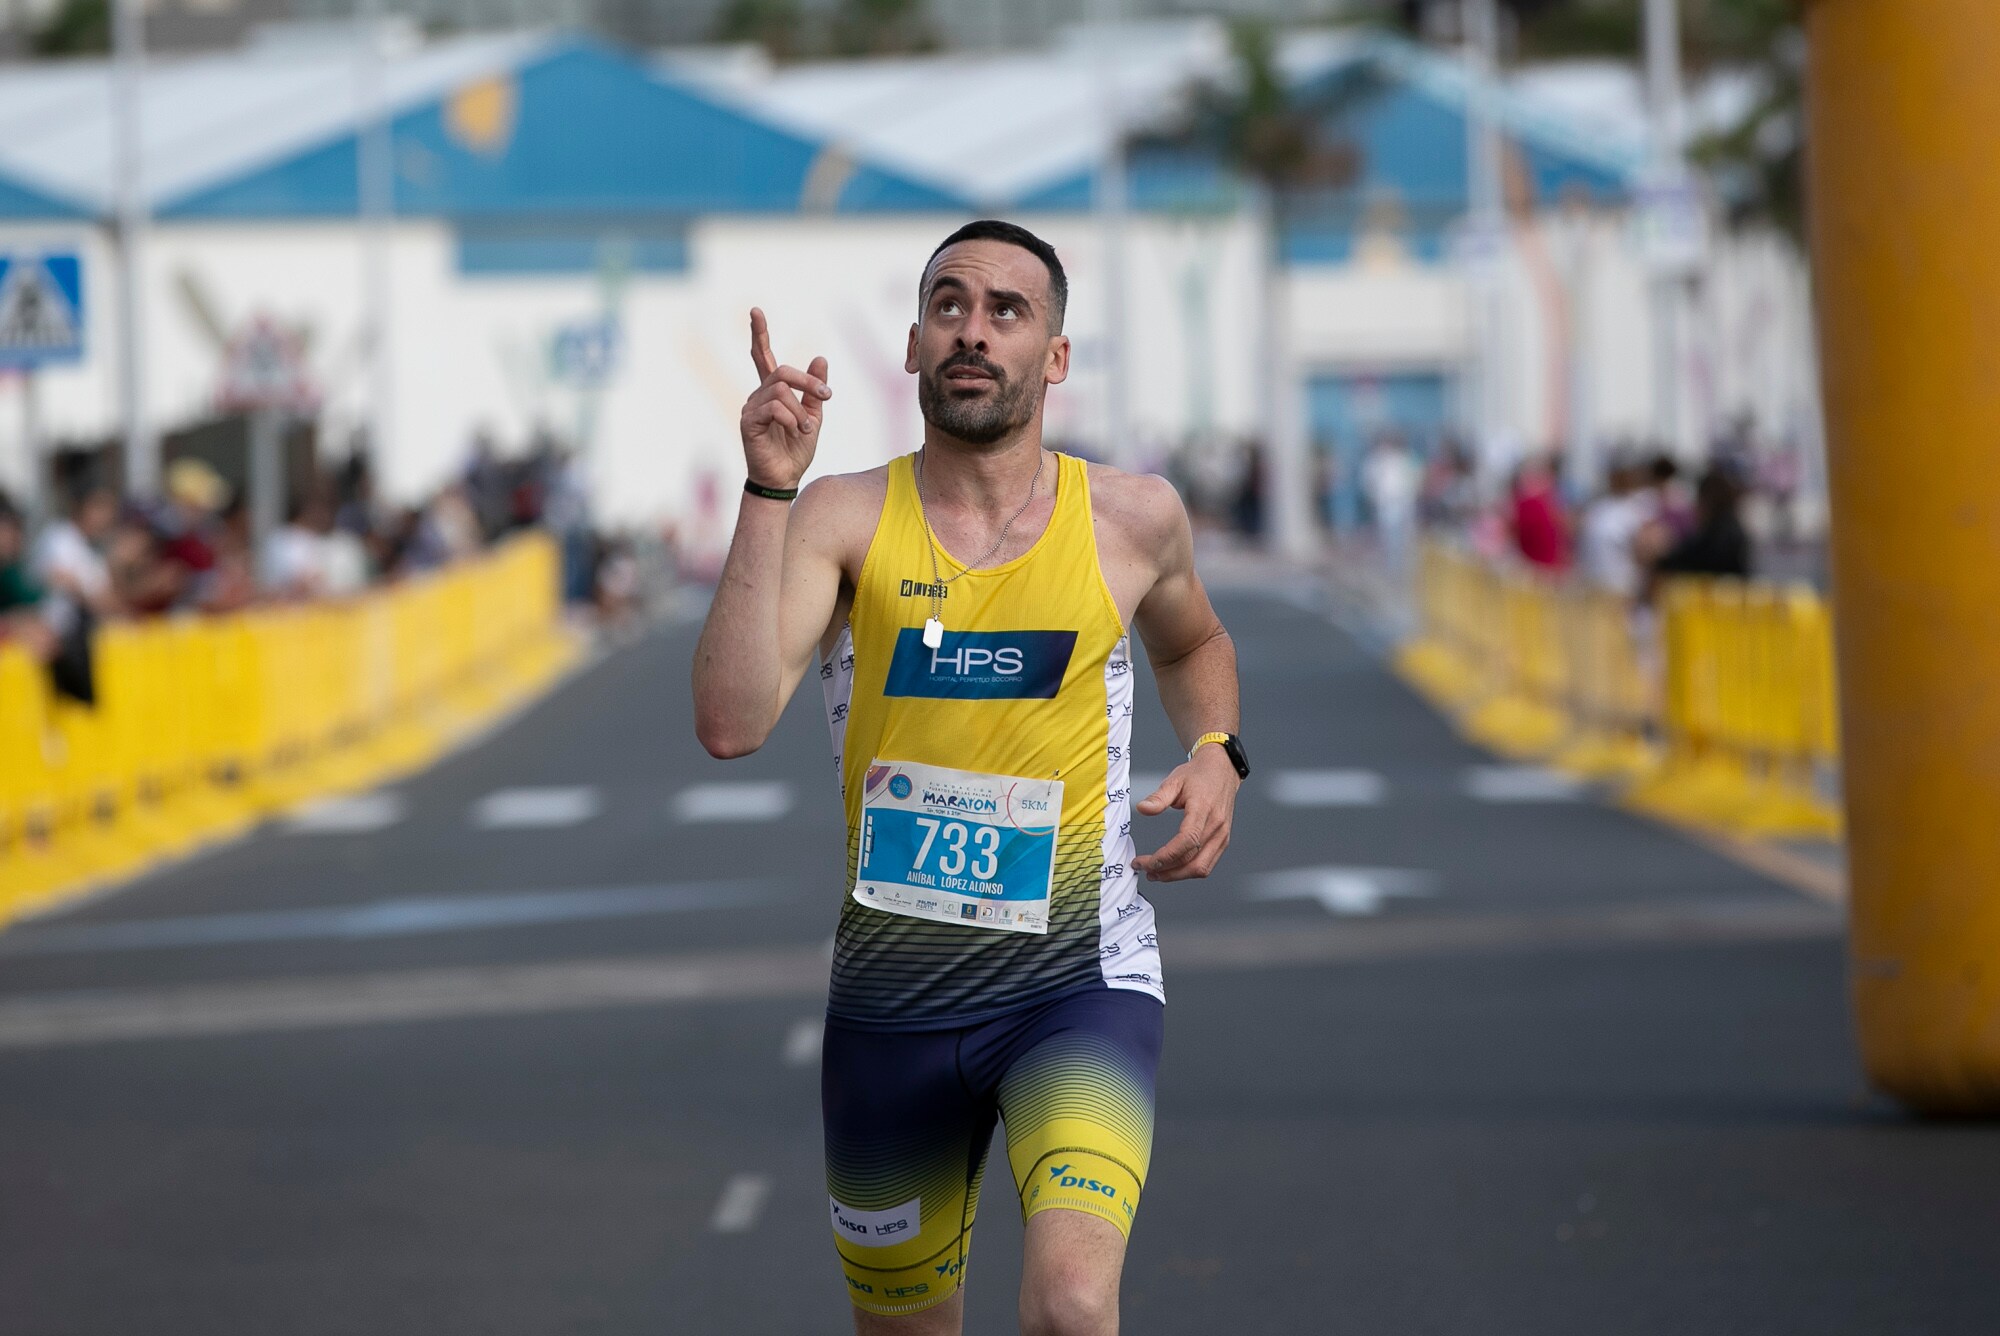 Fotos: La XIX Media Maratón de Las Palmas, un año más en las mejores manos con HPS